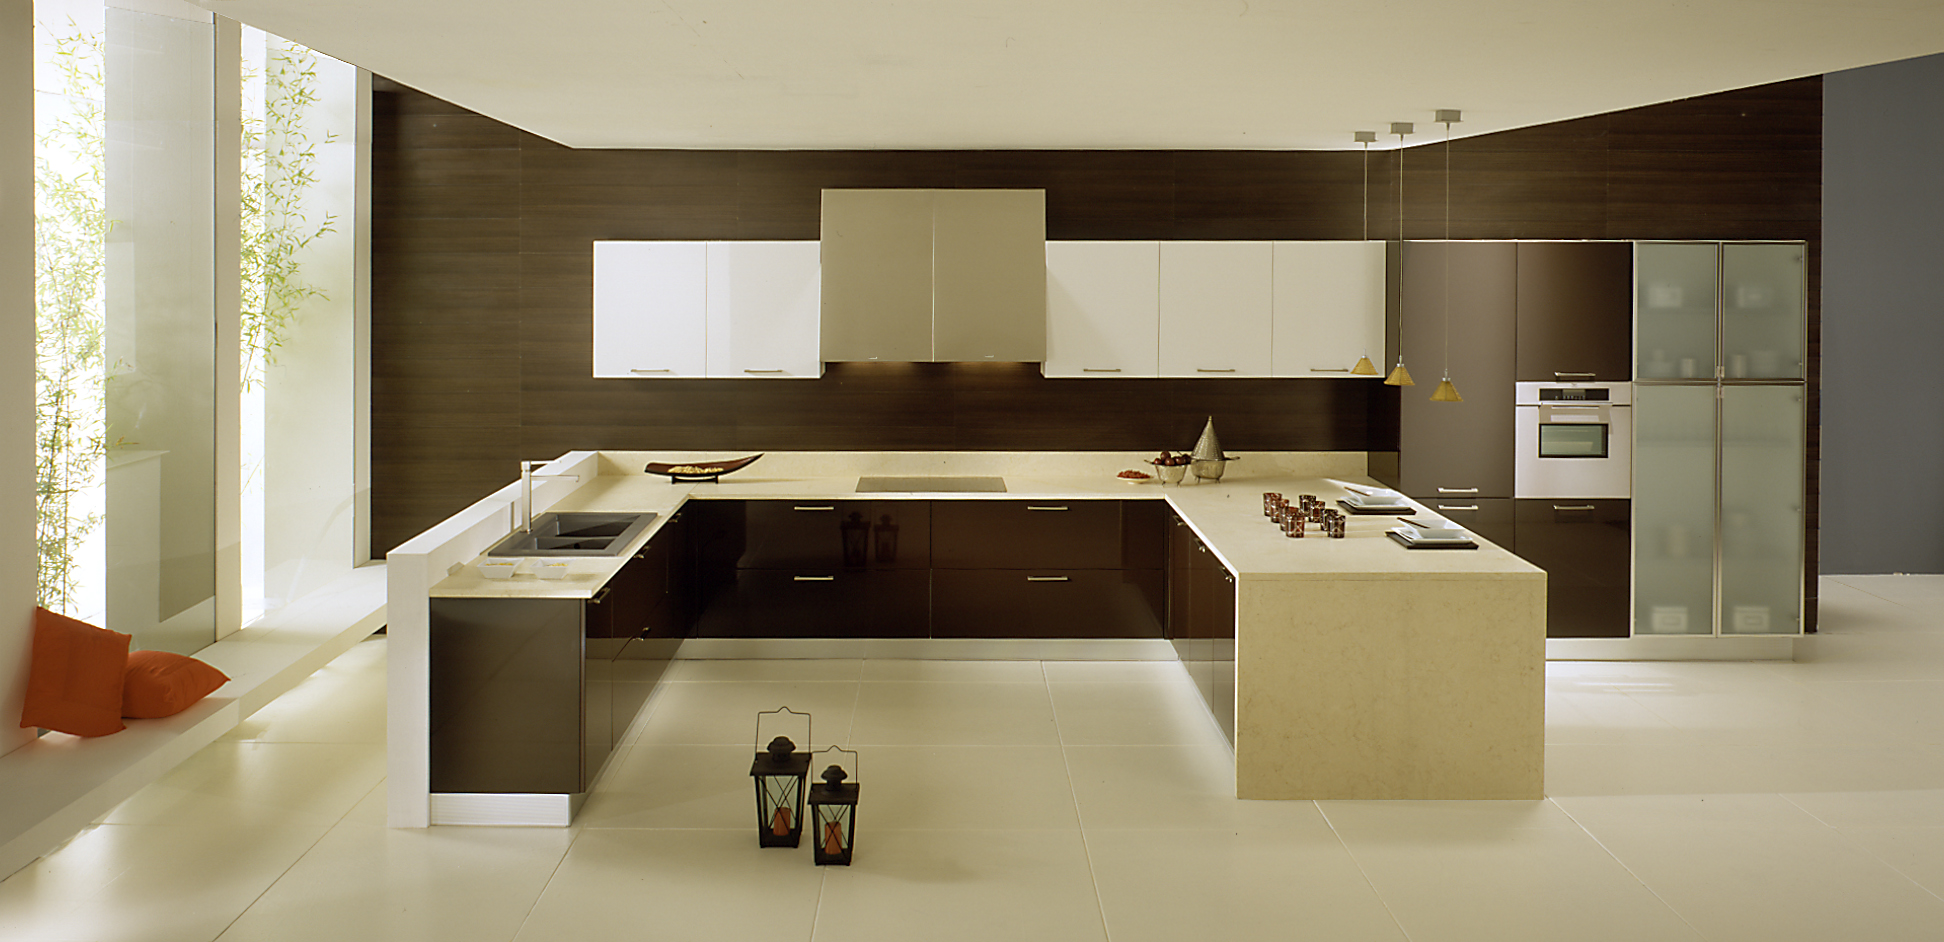 Polymer high-gloss modern kitchen